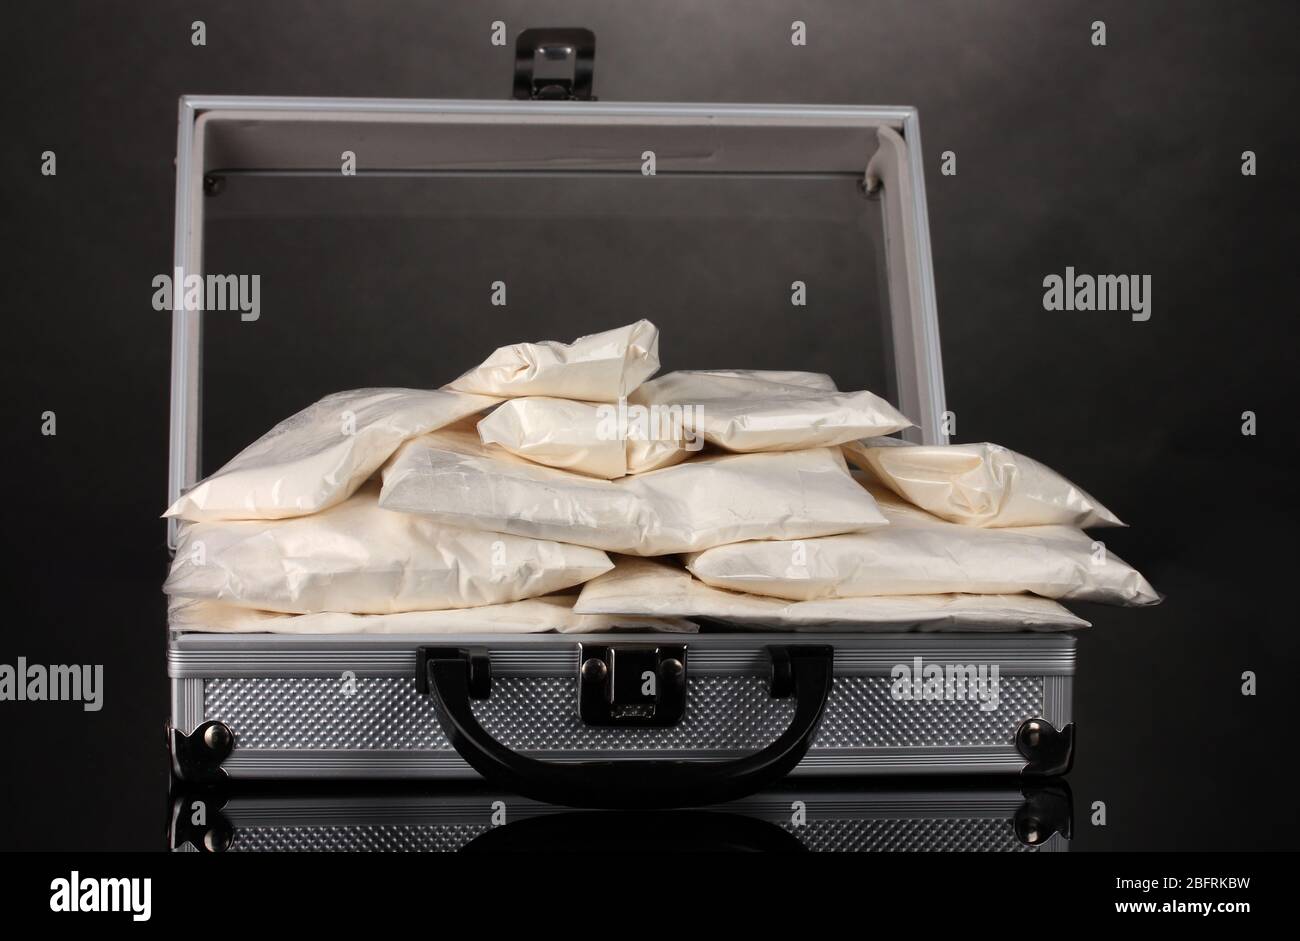 Cocaina in valigia su sfondo grigio Foto Stock